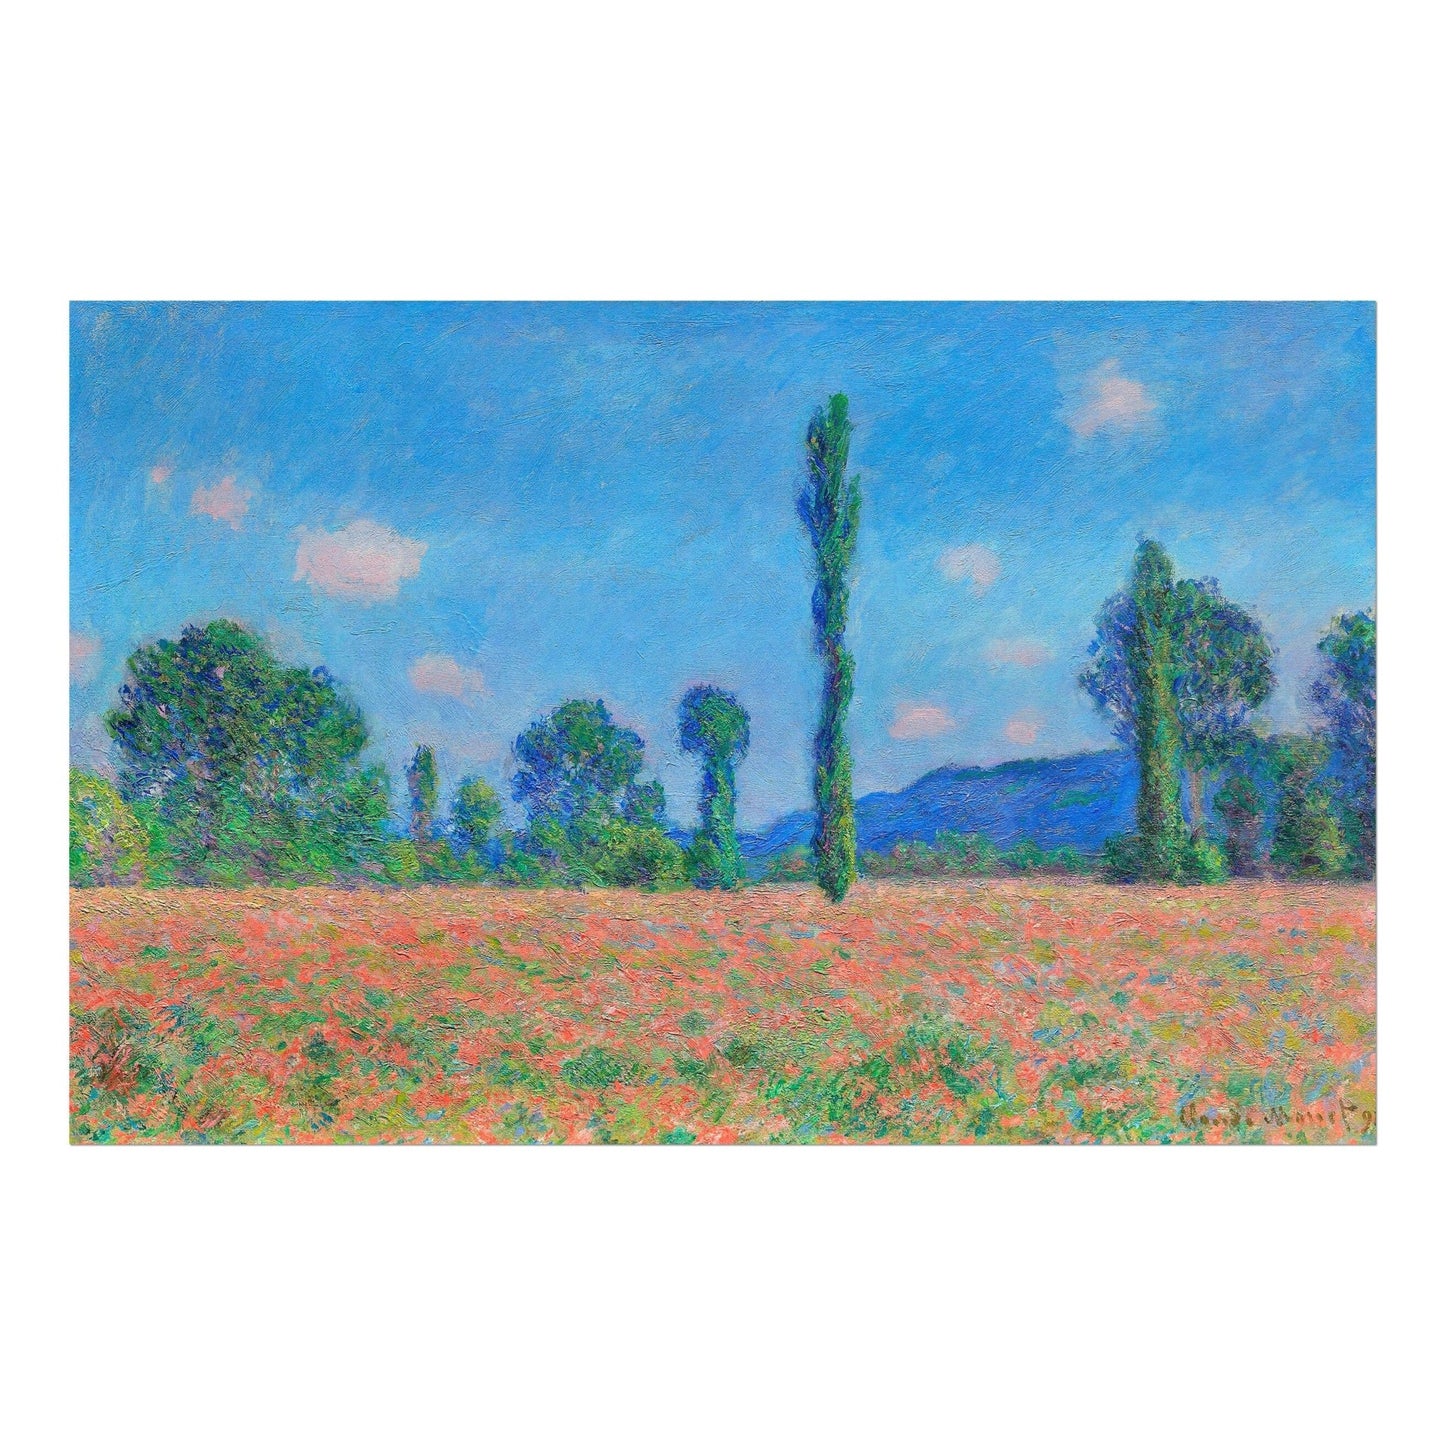 CLAUDE MONET - Poppy Field, Giverny